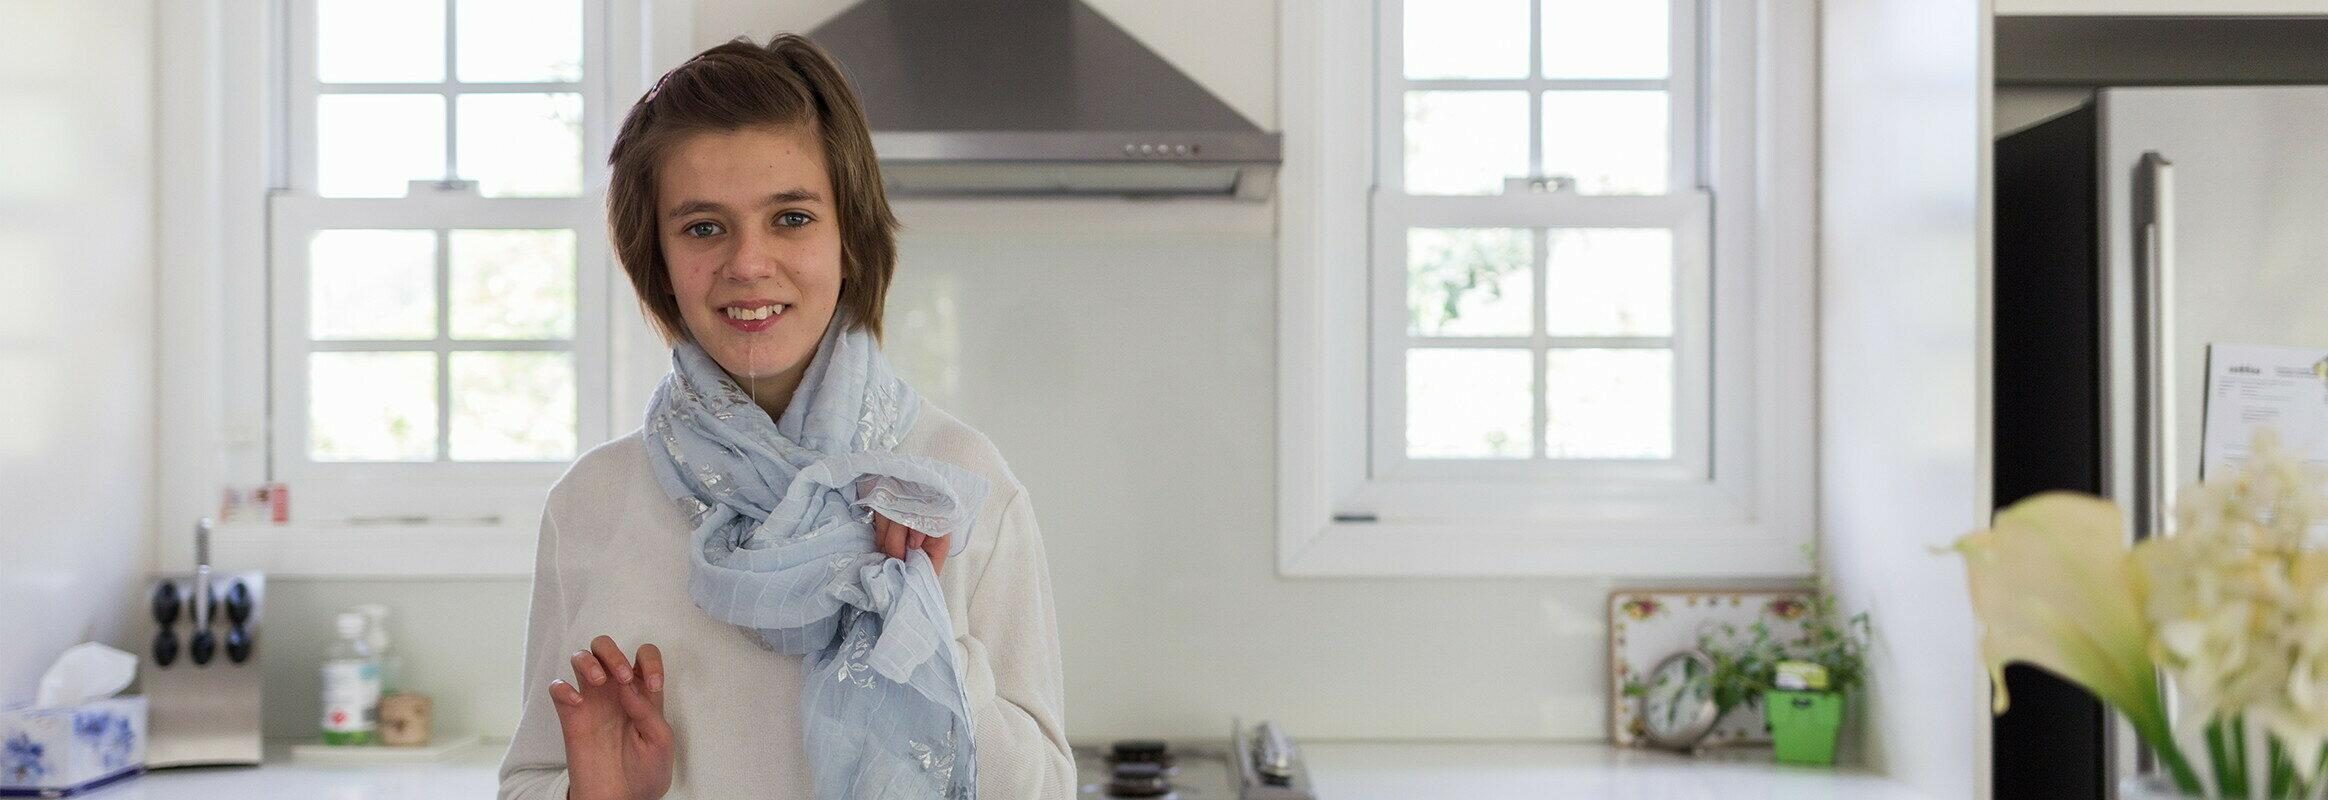 Lara, una joven blanca parada en una cocina luminosa, mirando a la cámara y sonriendo